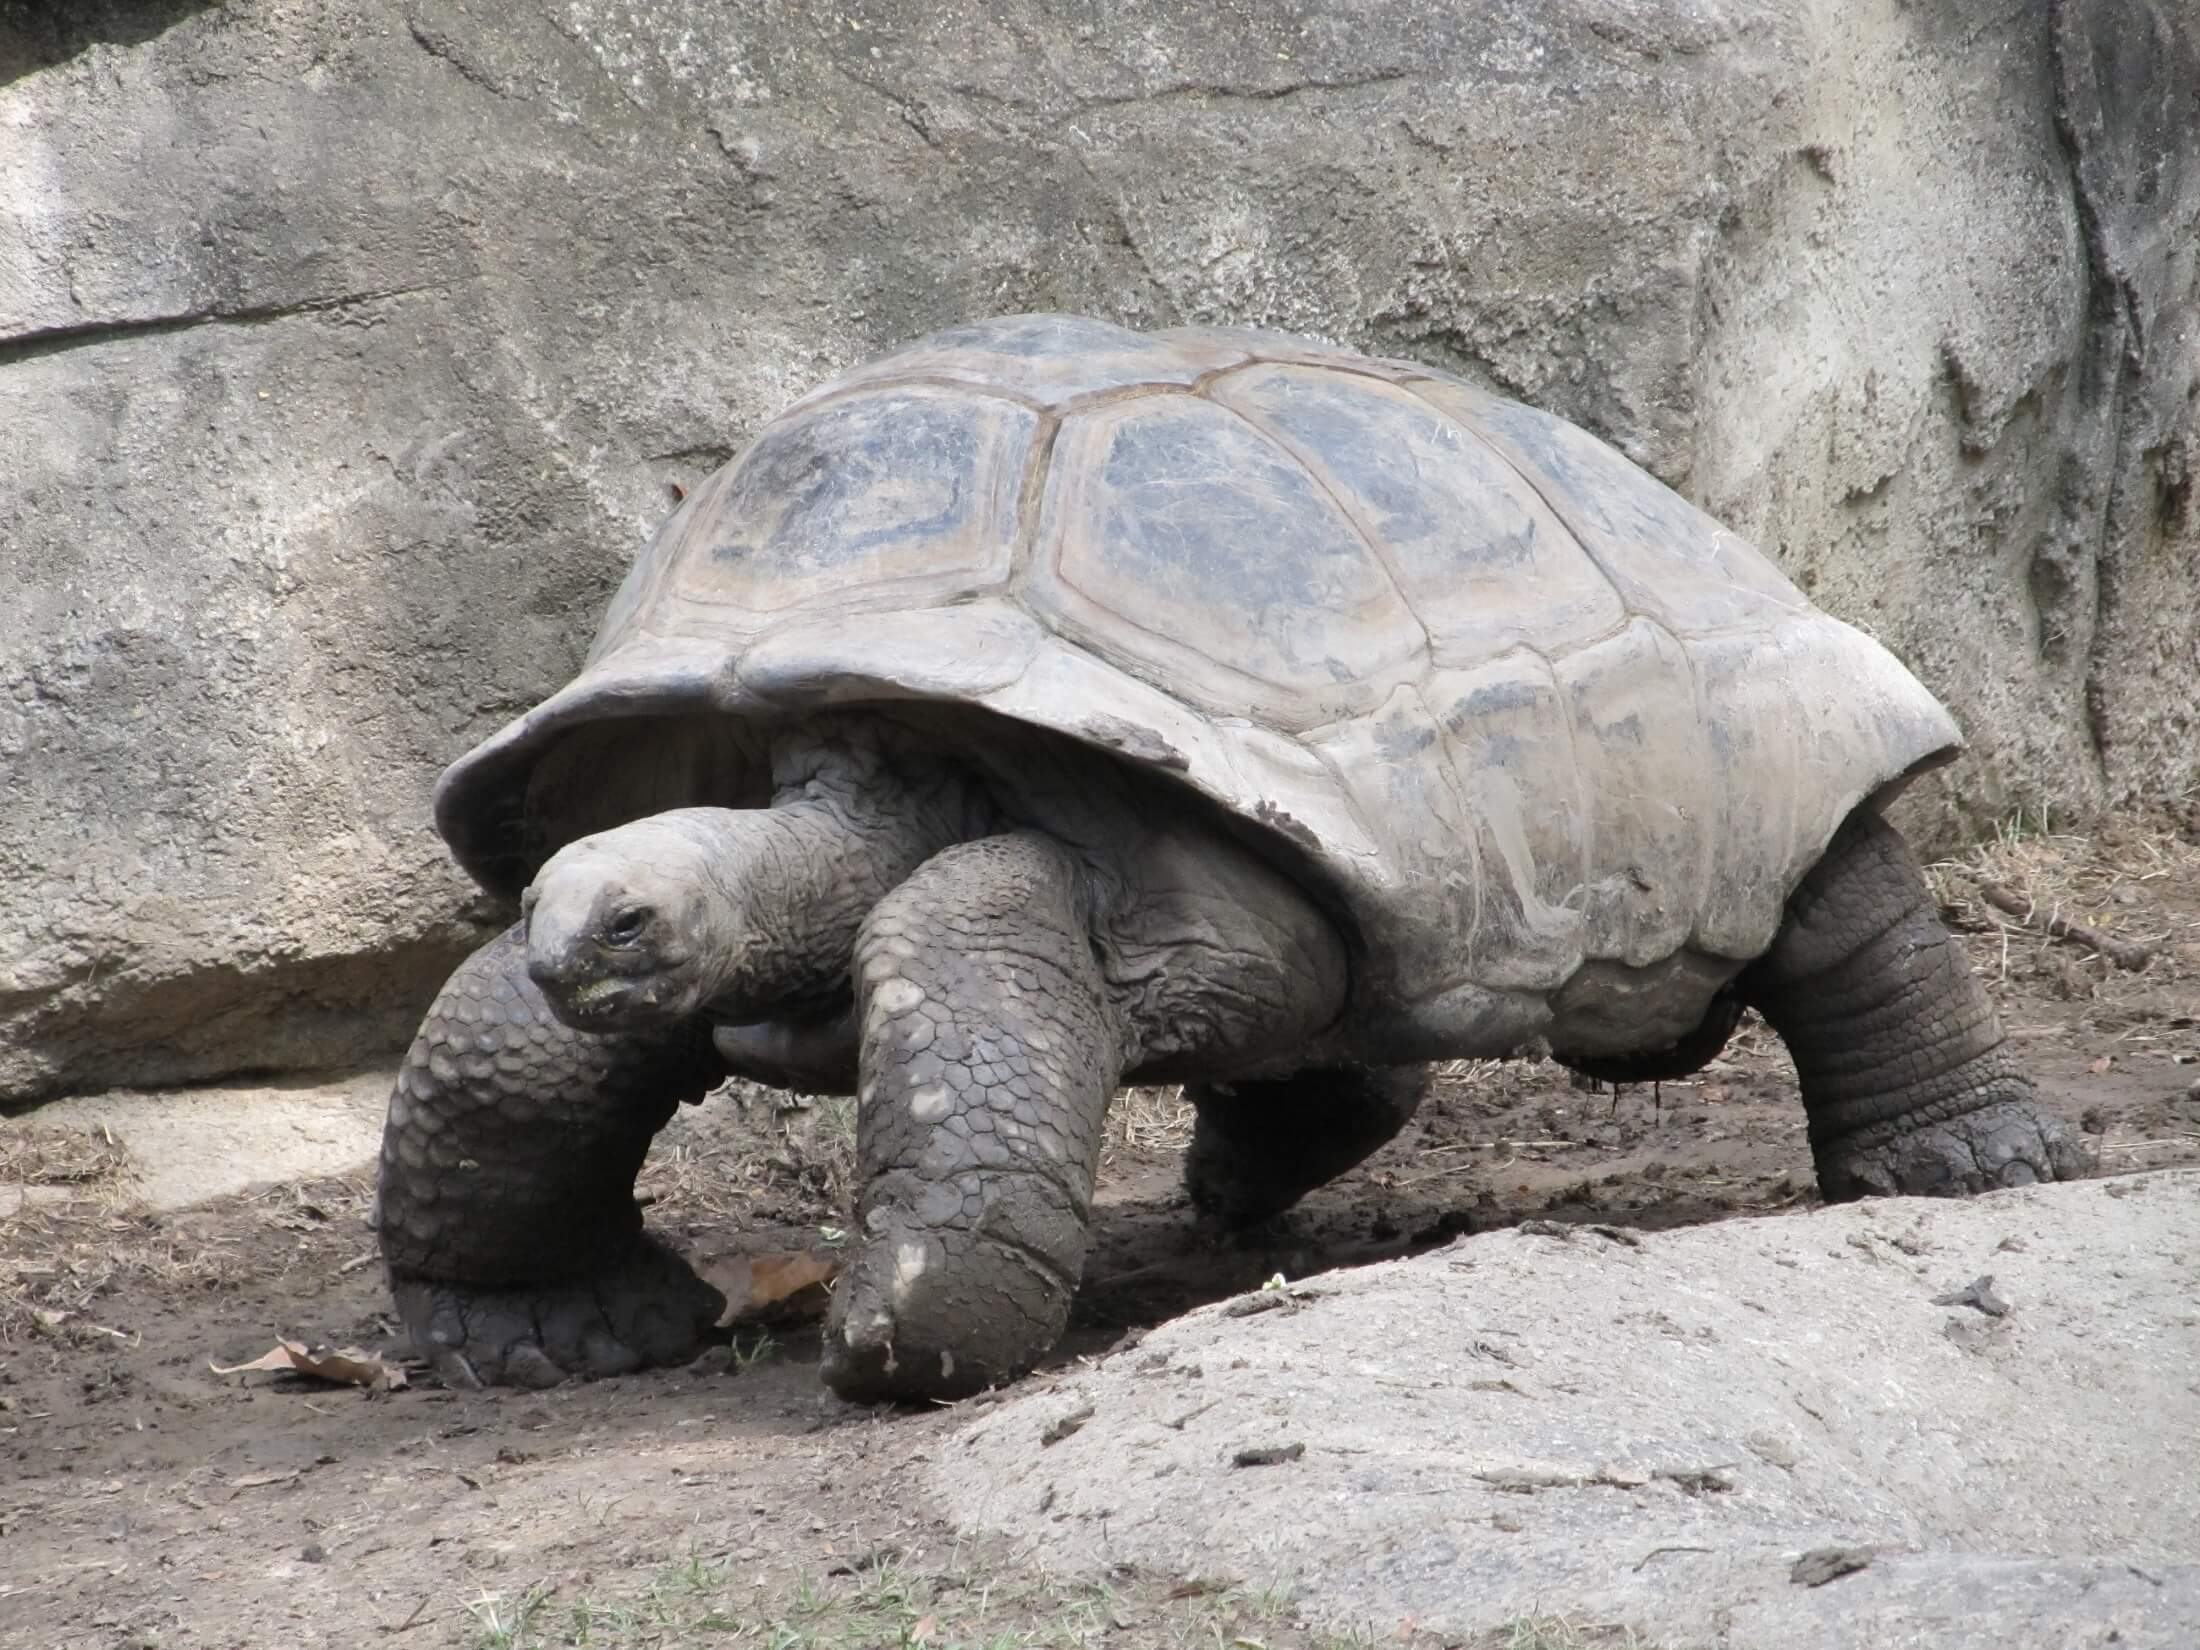 giant-tortoise-reptile-shell-walking-162307